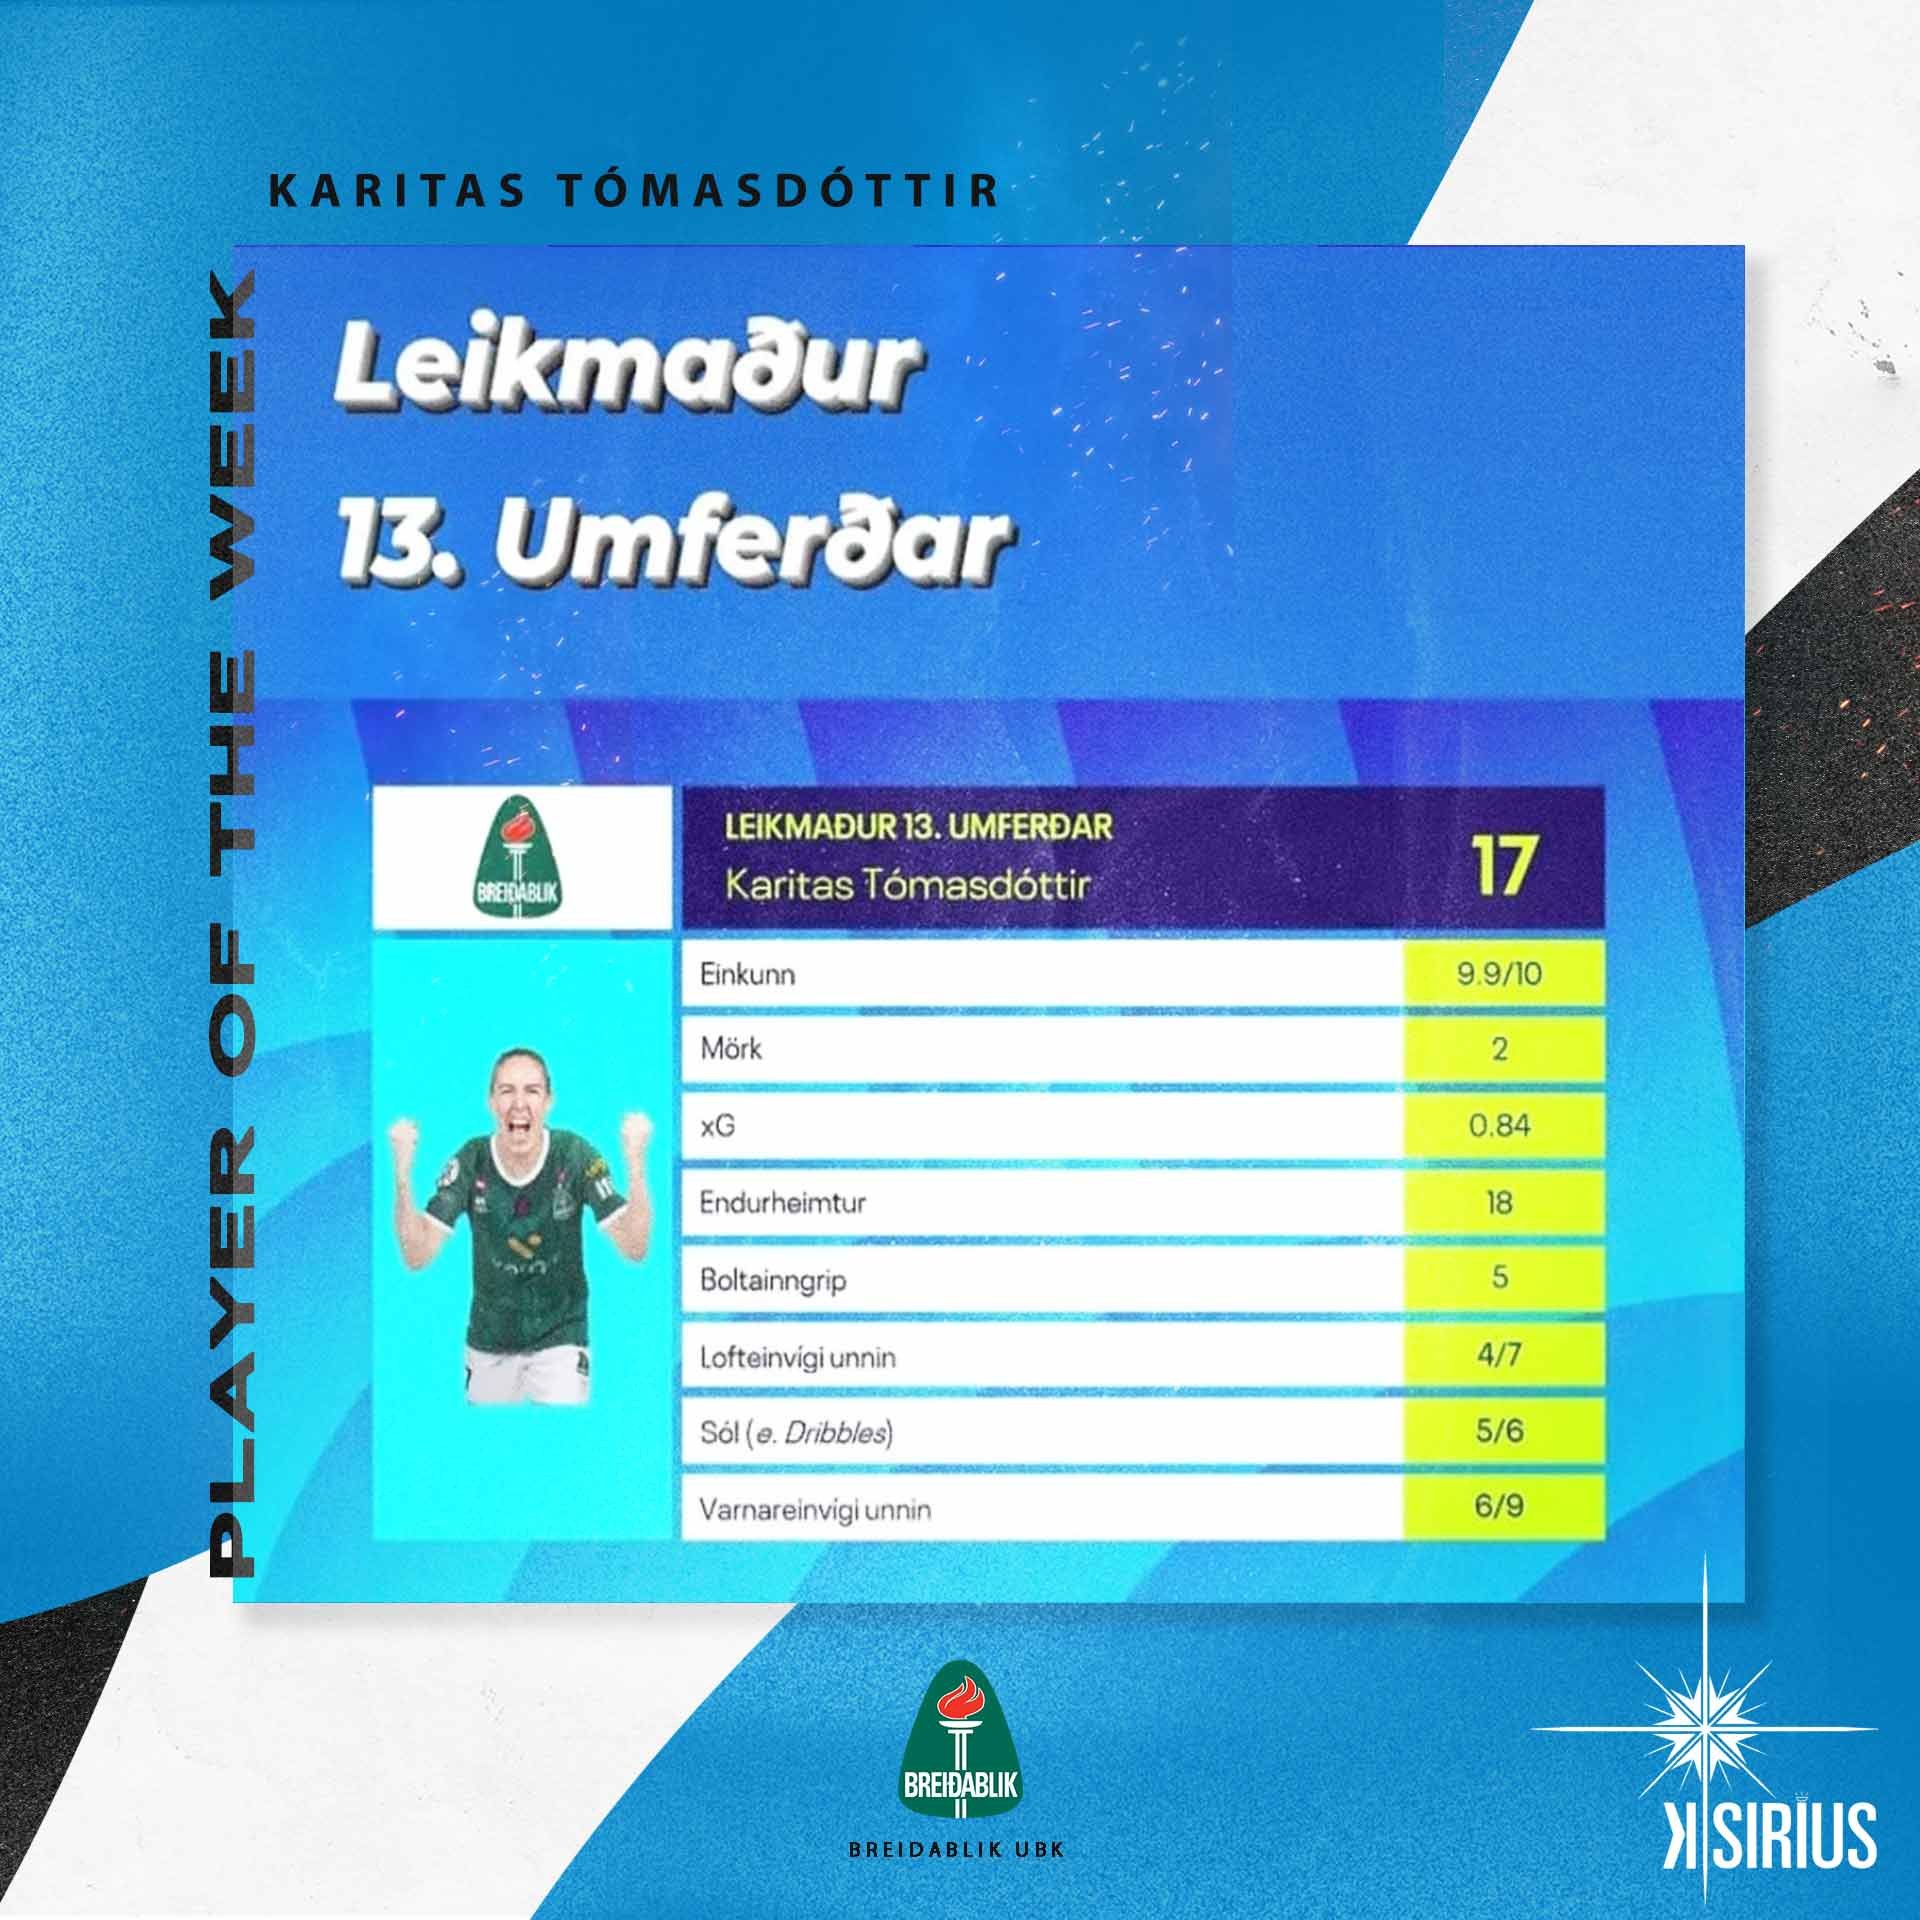 Player of the week: Karitas Tómasdóttir (Breidablik UBK)